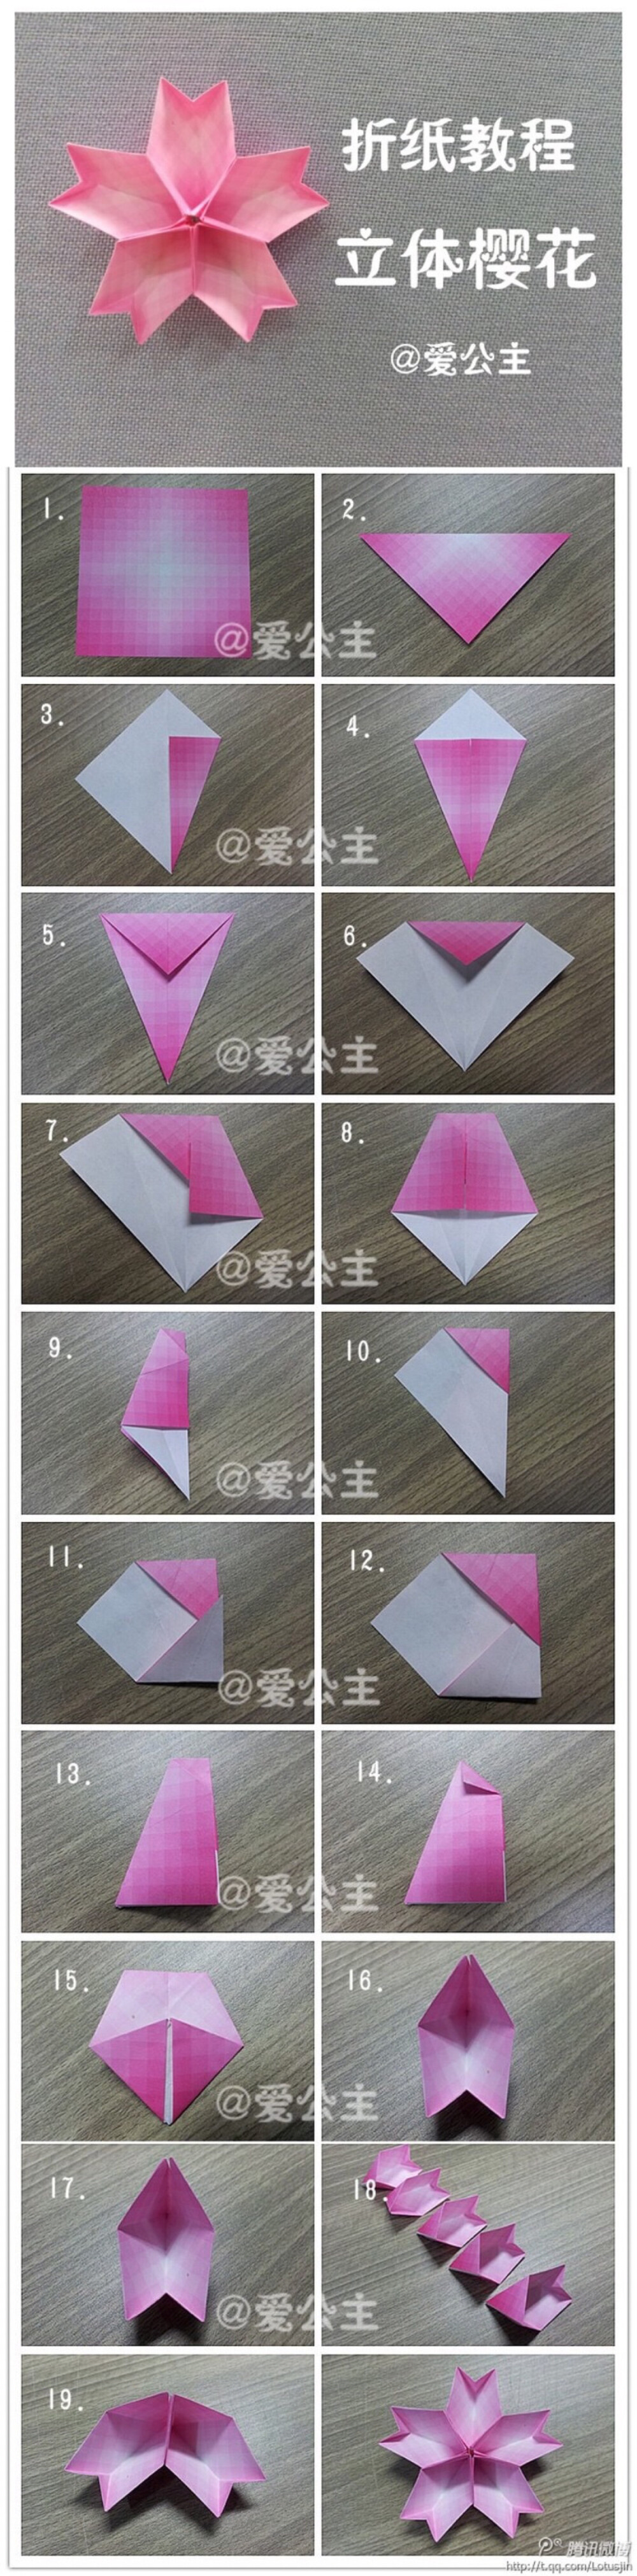 五瓣樱花折法图片